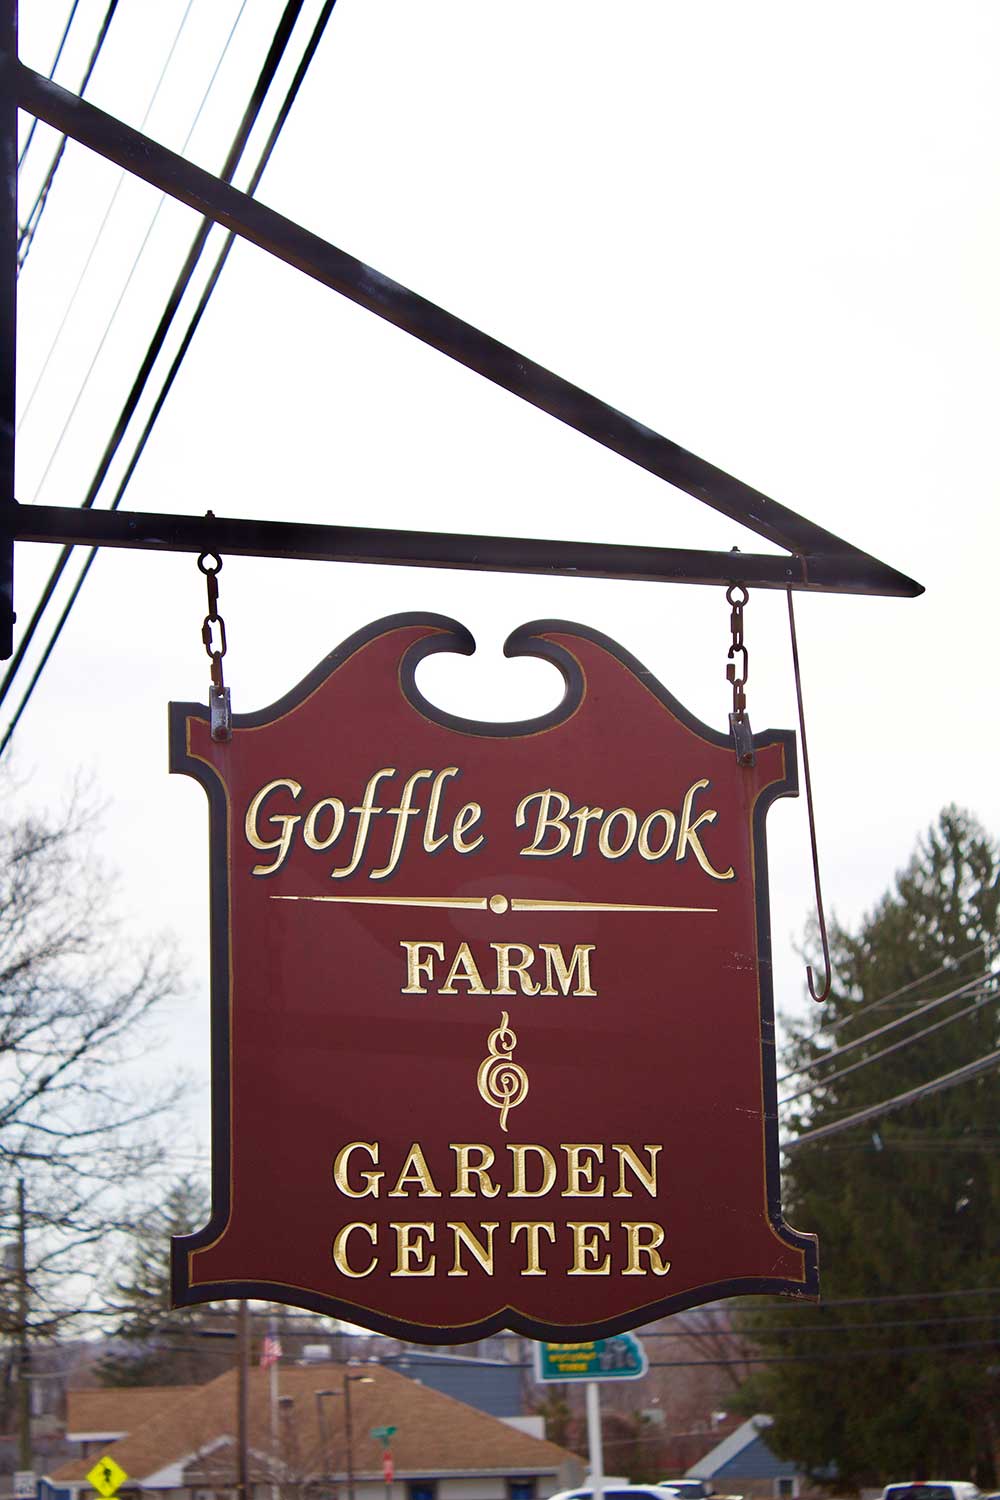 Goffle Brook Farms in Ridgewood